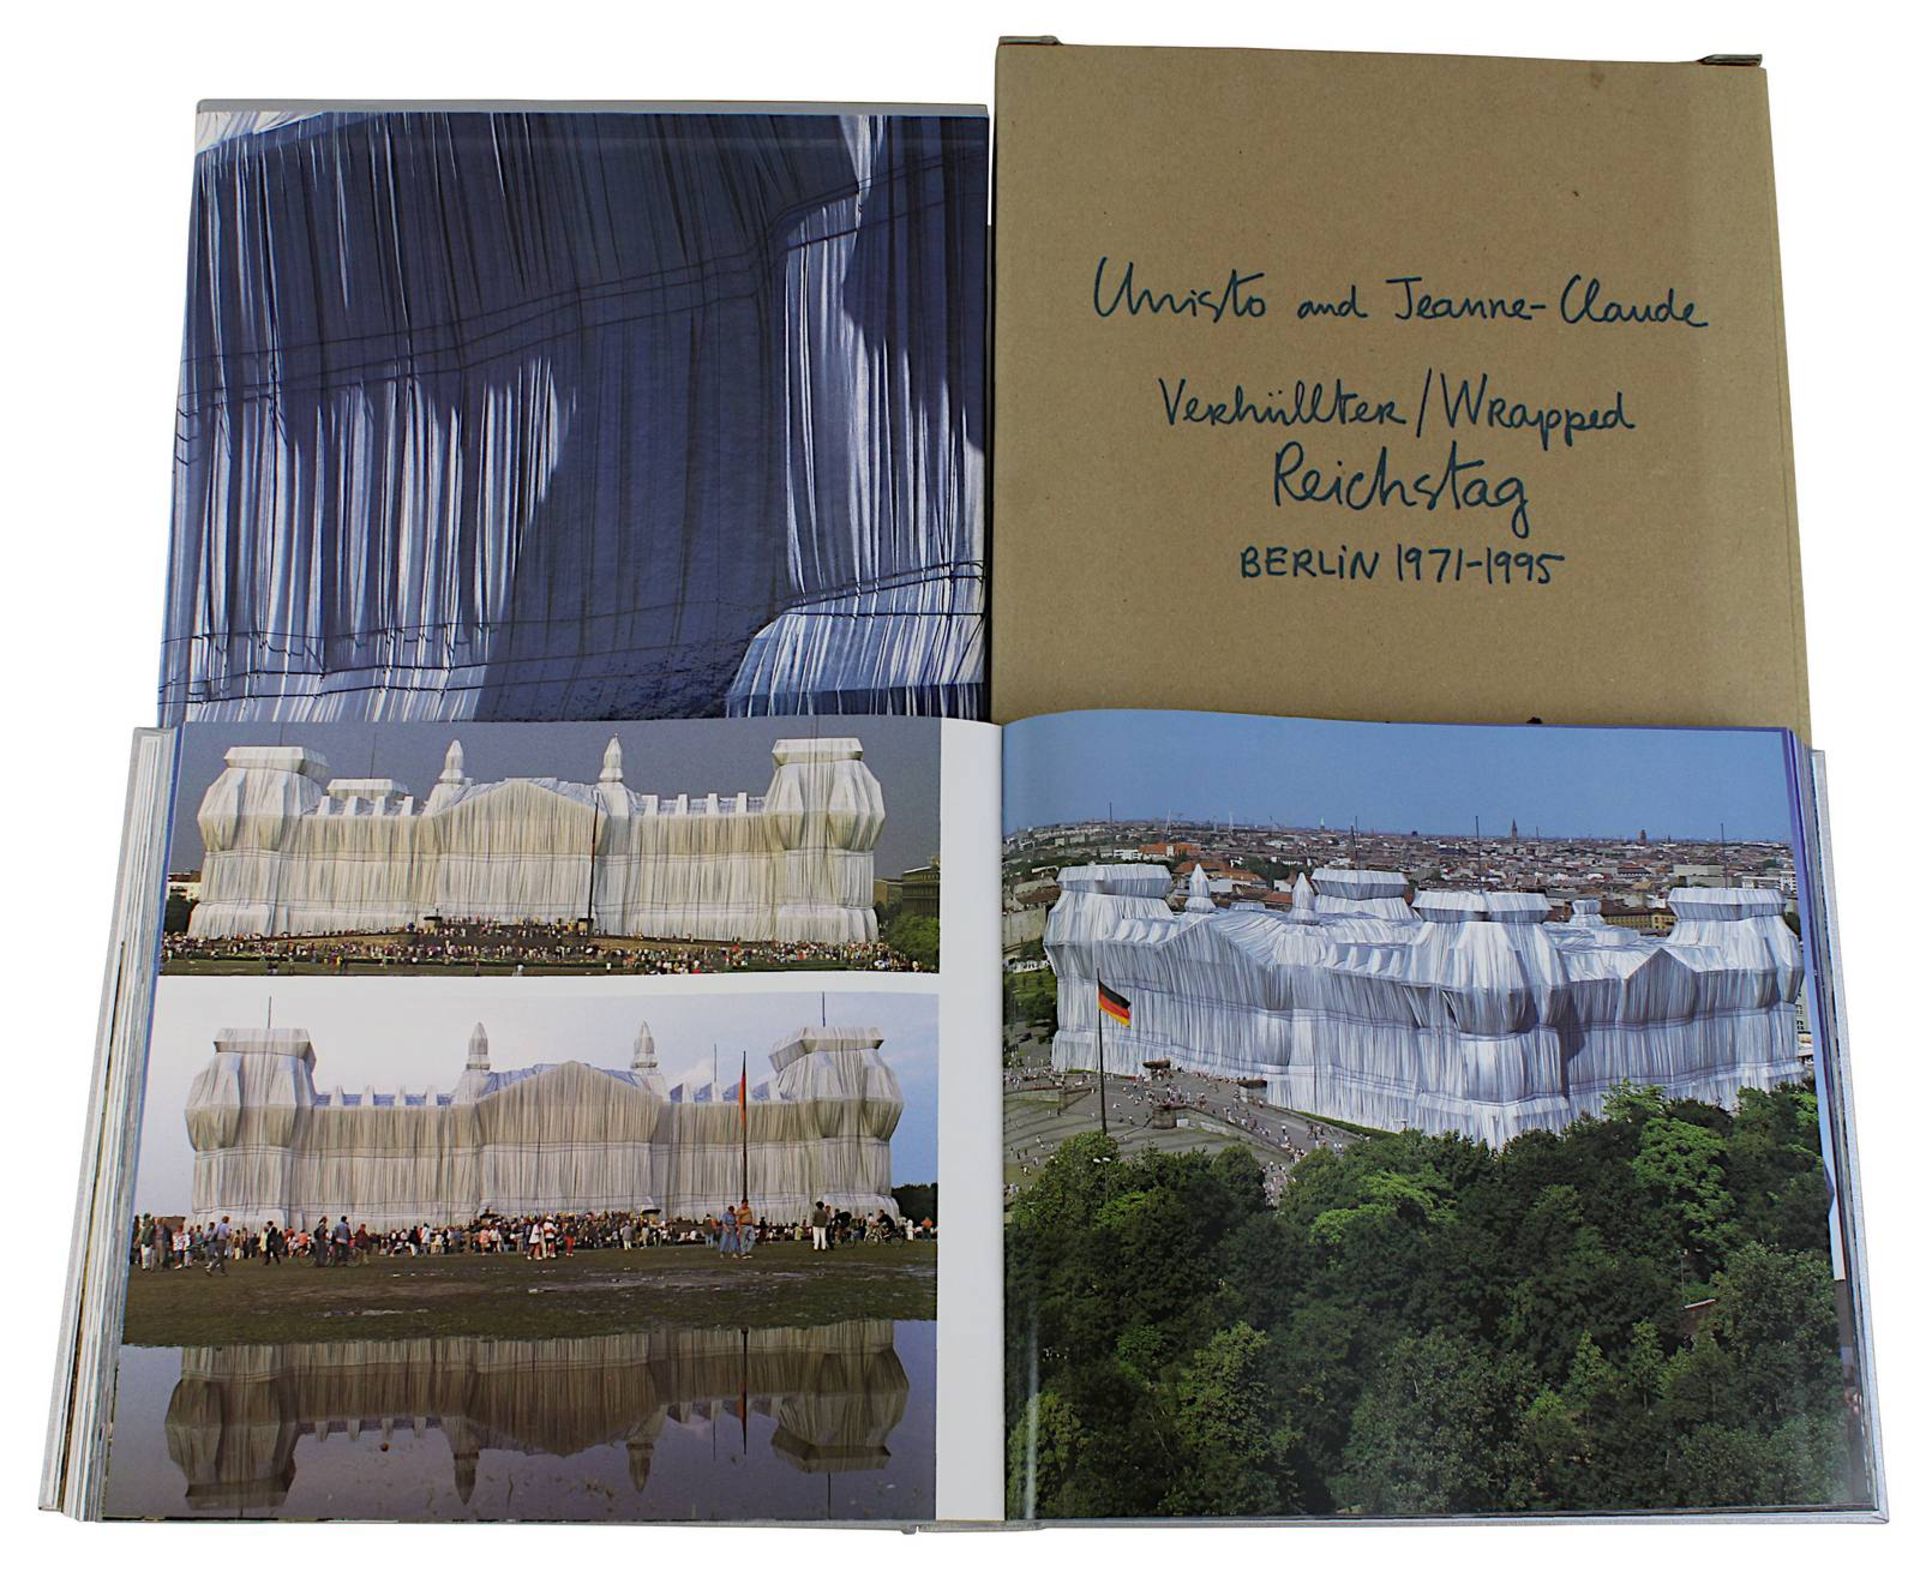 Christo and Jeanne-Claude "Verhüllter / Wrapped Reichstag Berlin 1971-95", Fotografien vom